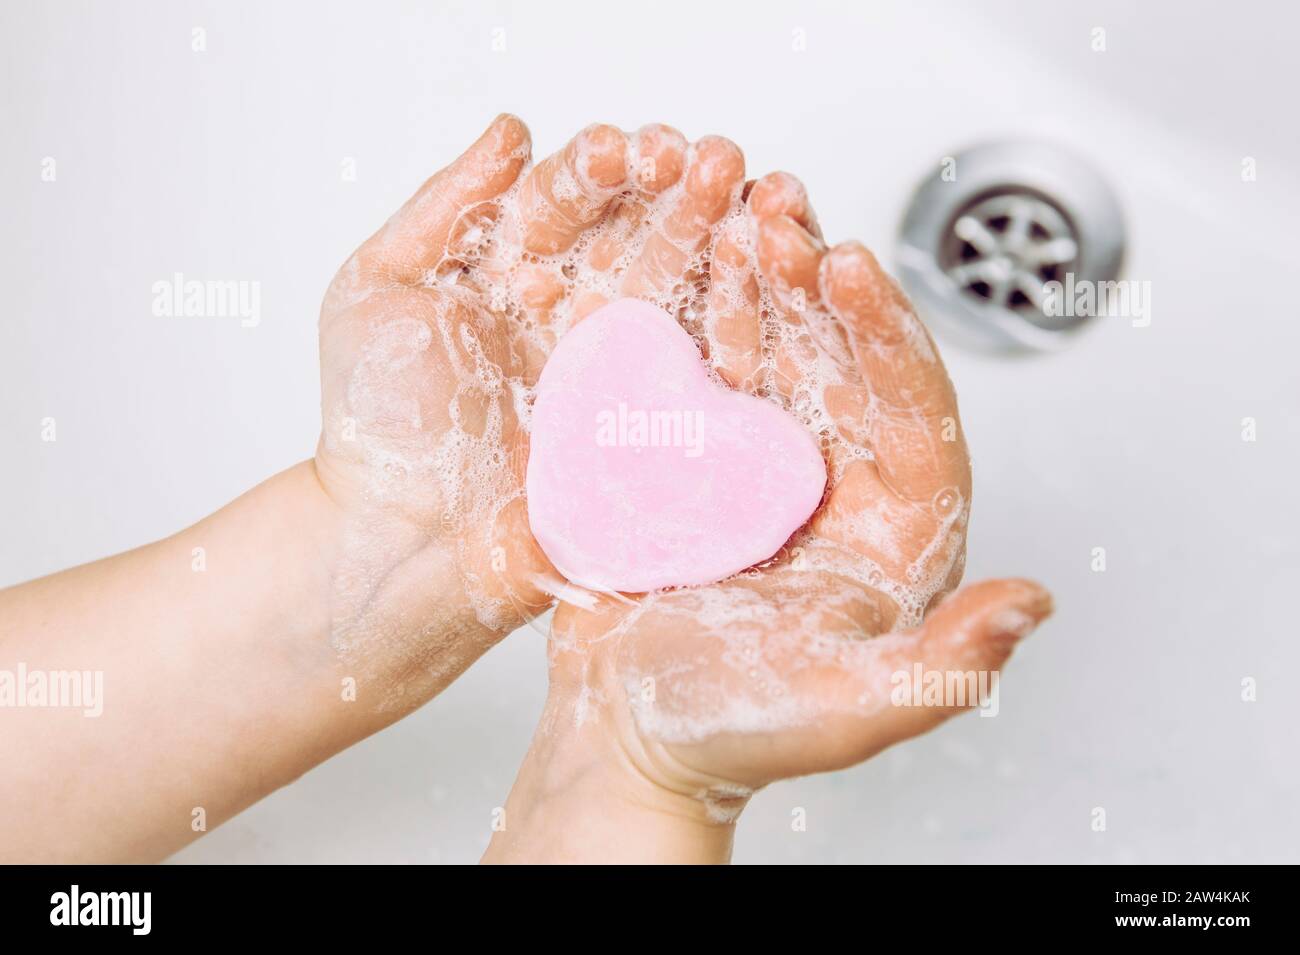 Importance des soins d'hygiène personnelle. Vue plate sur la couche de savon pour enfants se lavant les mains sales avec une barre de savon rose en forme de coeur, beaucoup de mousse. Espace de copie. Banque D'Images